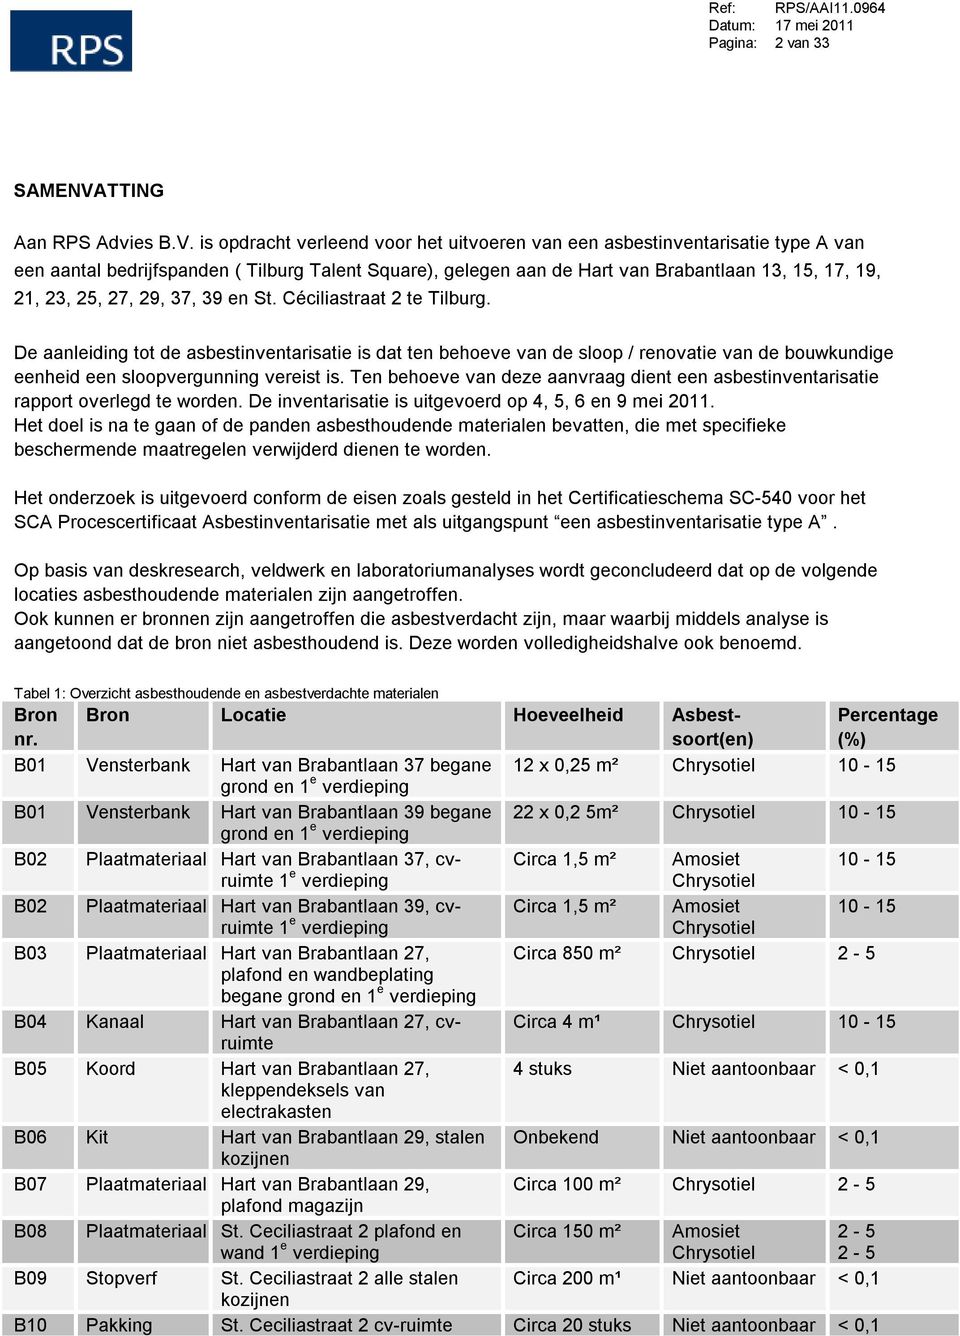 is opdracht verleend voor het uitvoeren van een asbestinventarisatie type A van een aantal bedrijfspanden ( Tilburg Talent Square), gelegen aan de Hart van Brabantlaan 13, 15, 17, 19, 21, 23, 25, 27,